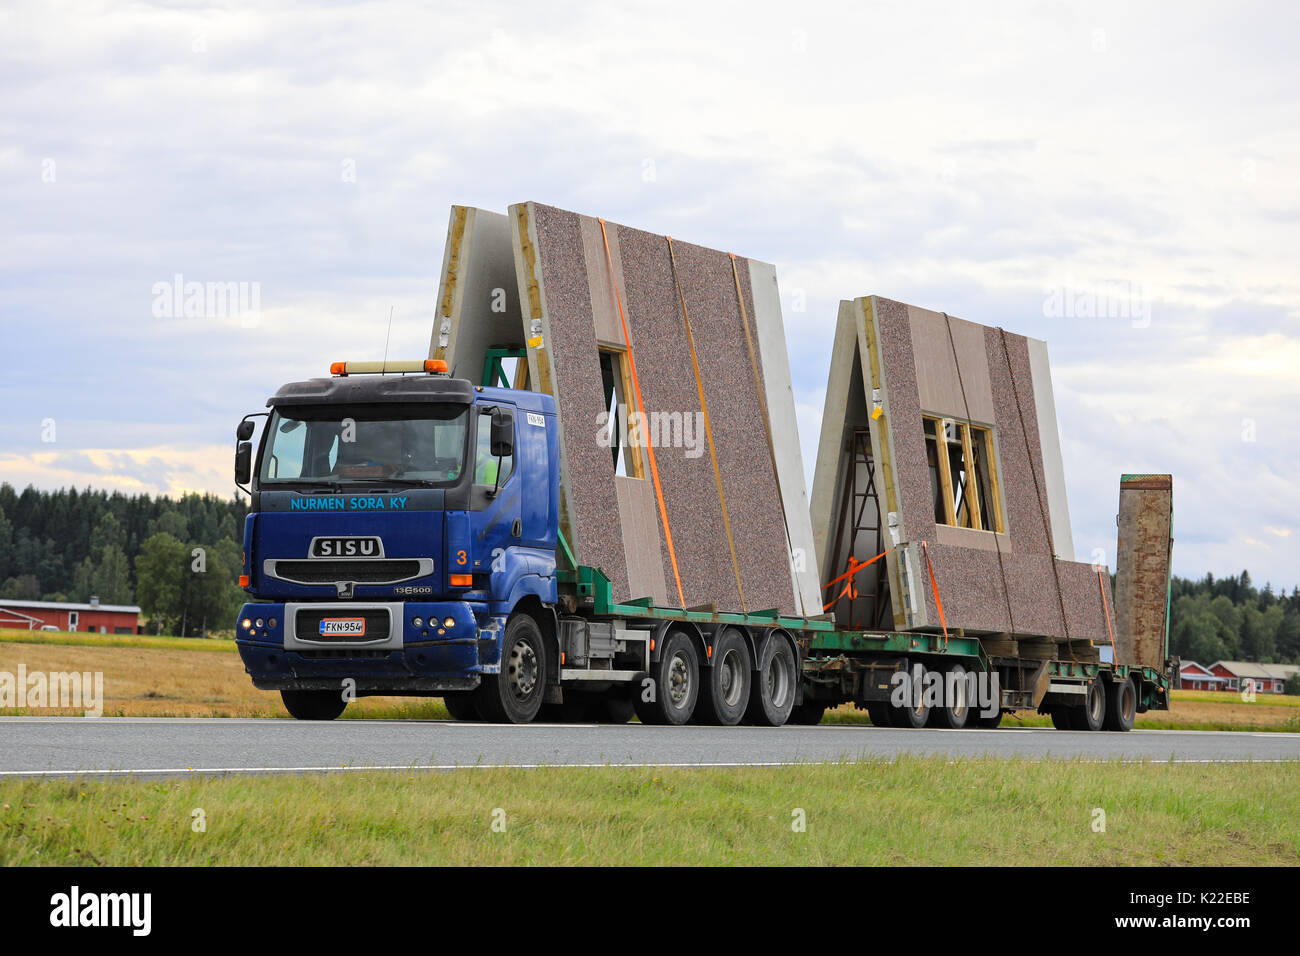 JOKIOINEN, Finlandia - 25 agosto 2017: Blu Sisu E500 di Nurmen Sora Ky trasporta i prefabbricati in calcestruzzo elementi di costruzione lungo la strada statale in un giorno nuvoloso Foto Stock